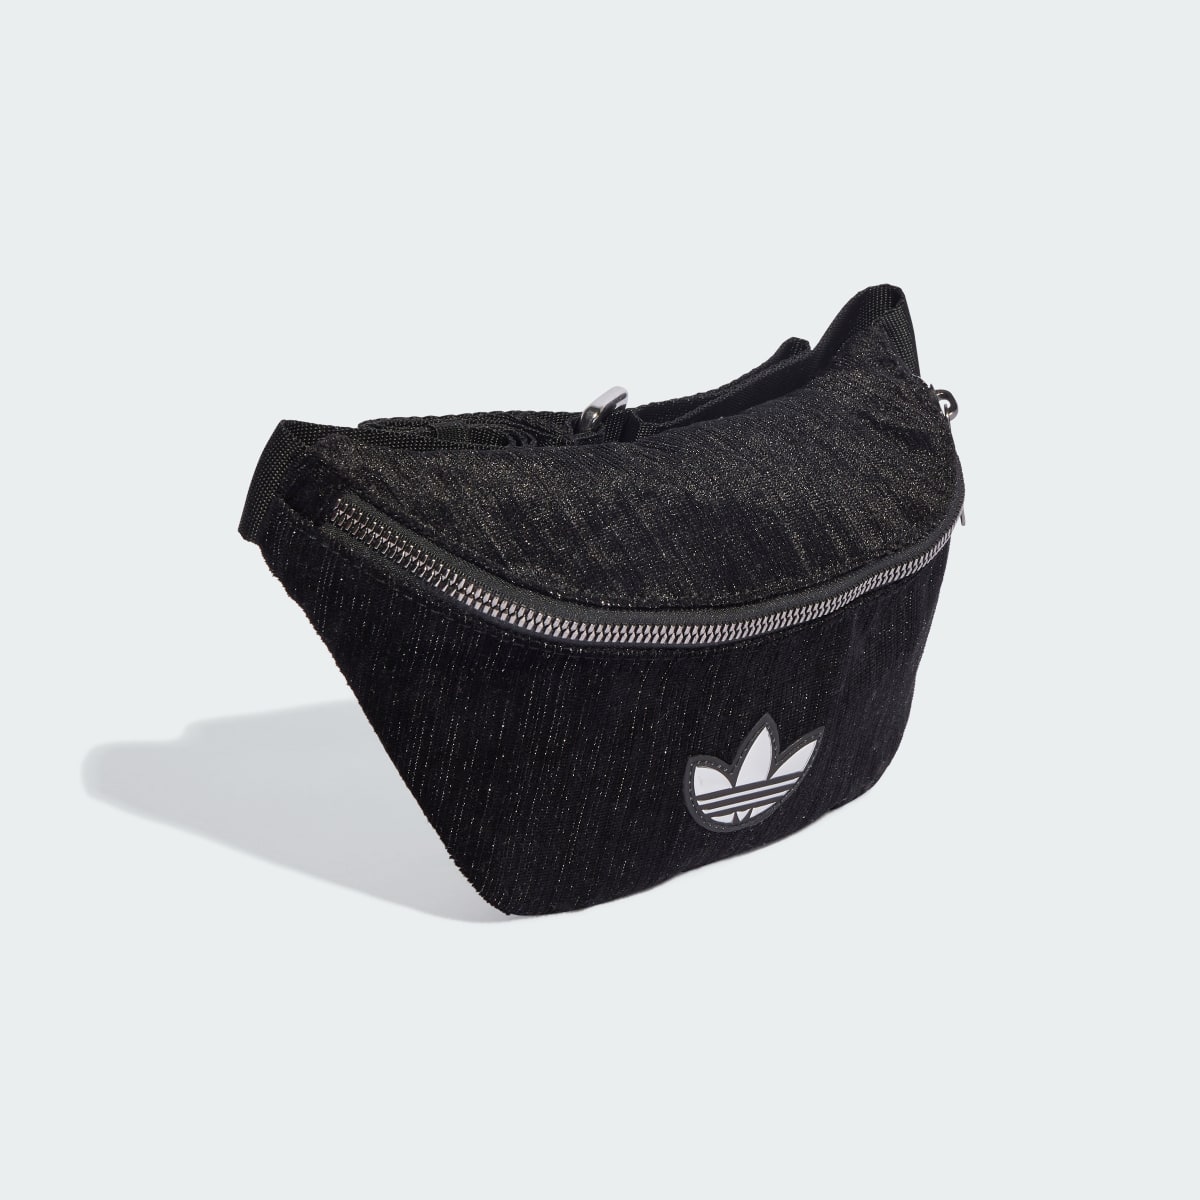 Adidas Glam Goth Waist Bag. 4